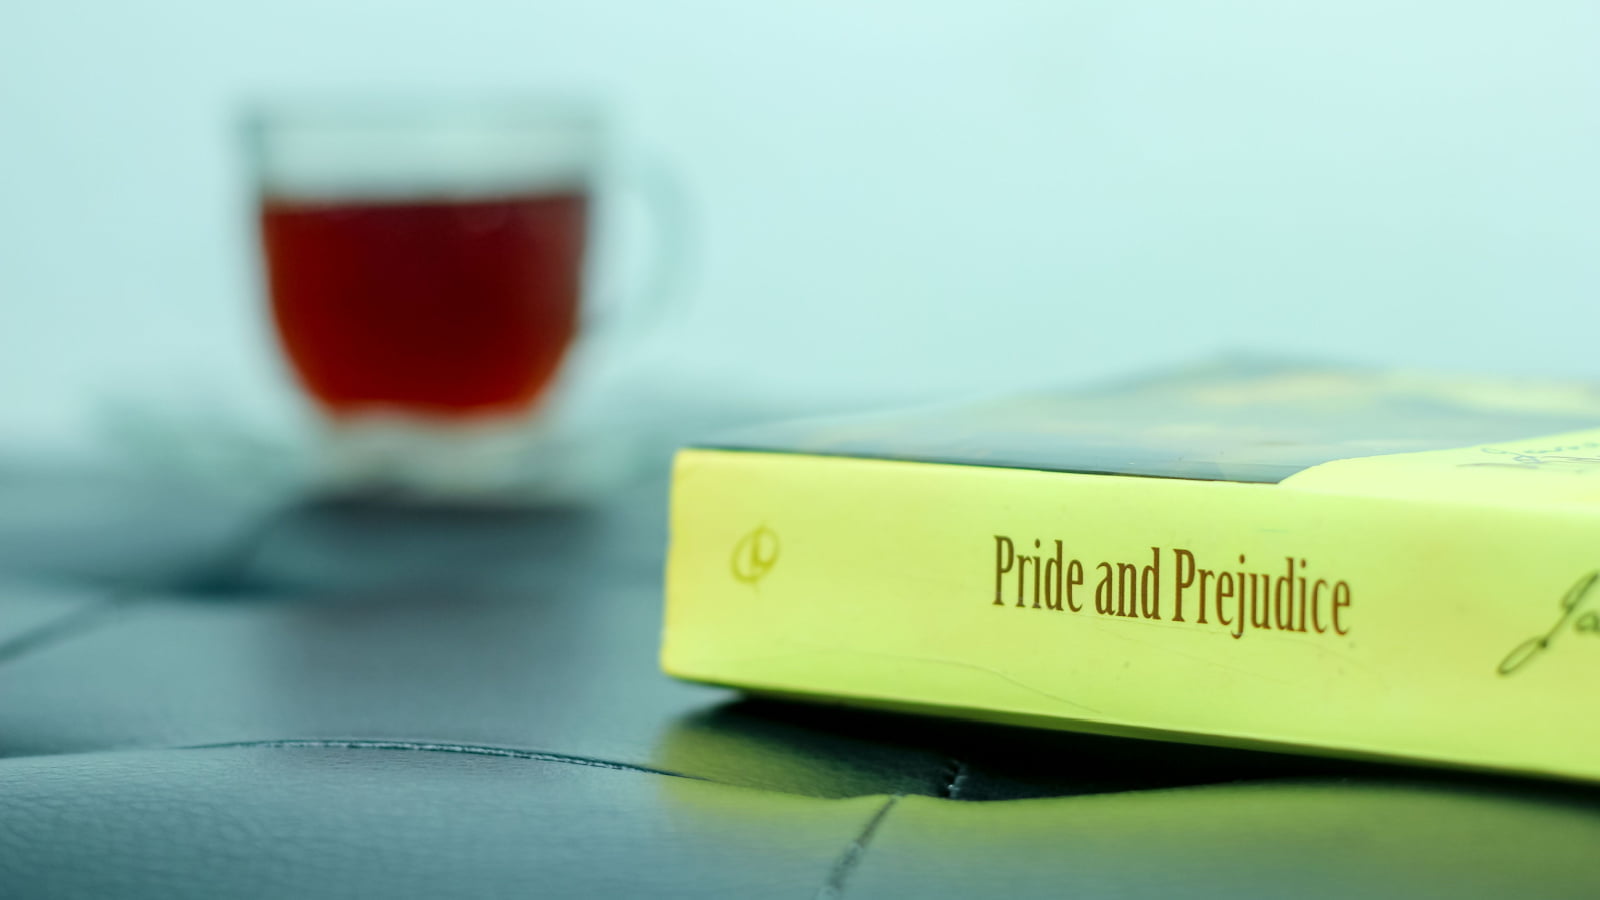 Pride and prejudice.